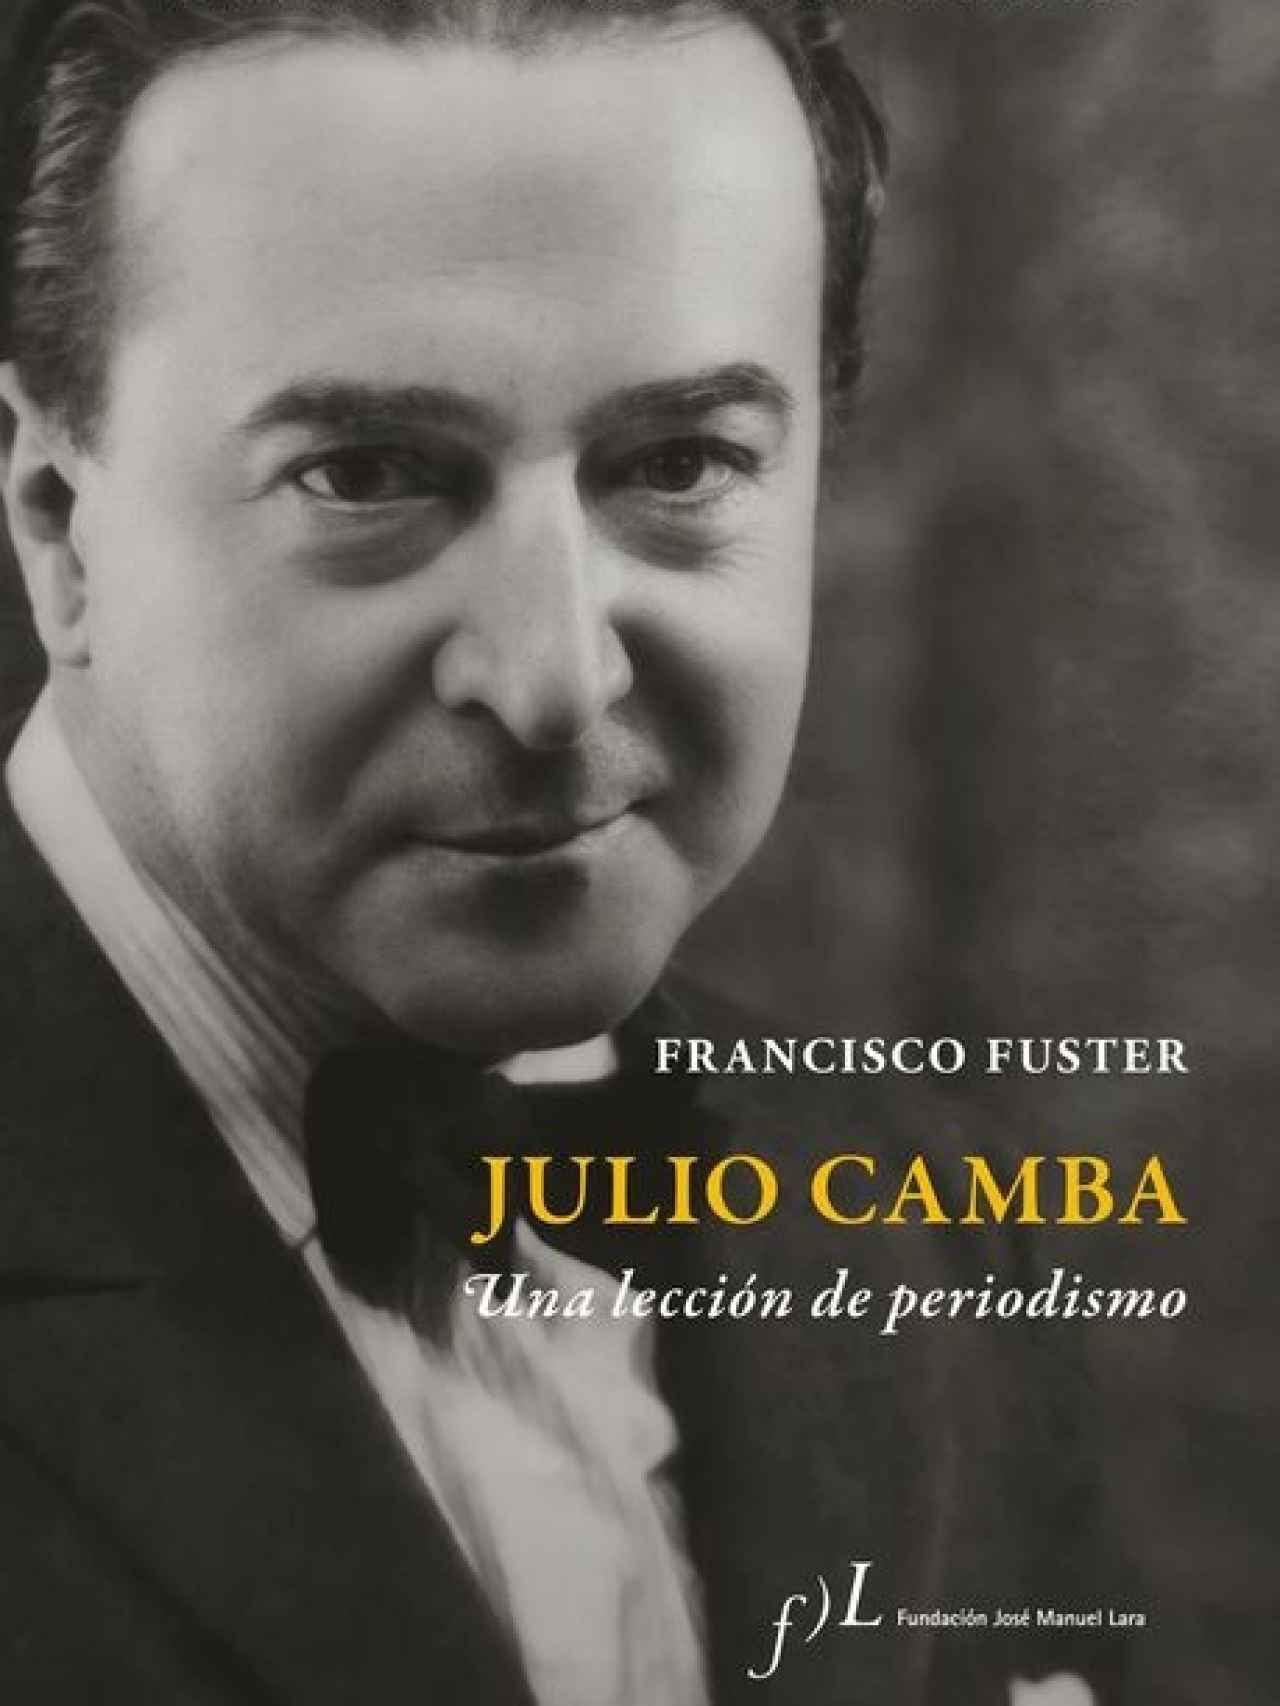 Cubierta del libro 'Julio Camba, una lección de periodismo'.